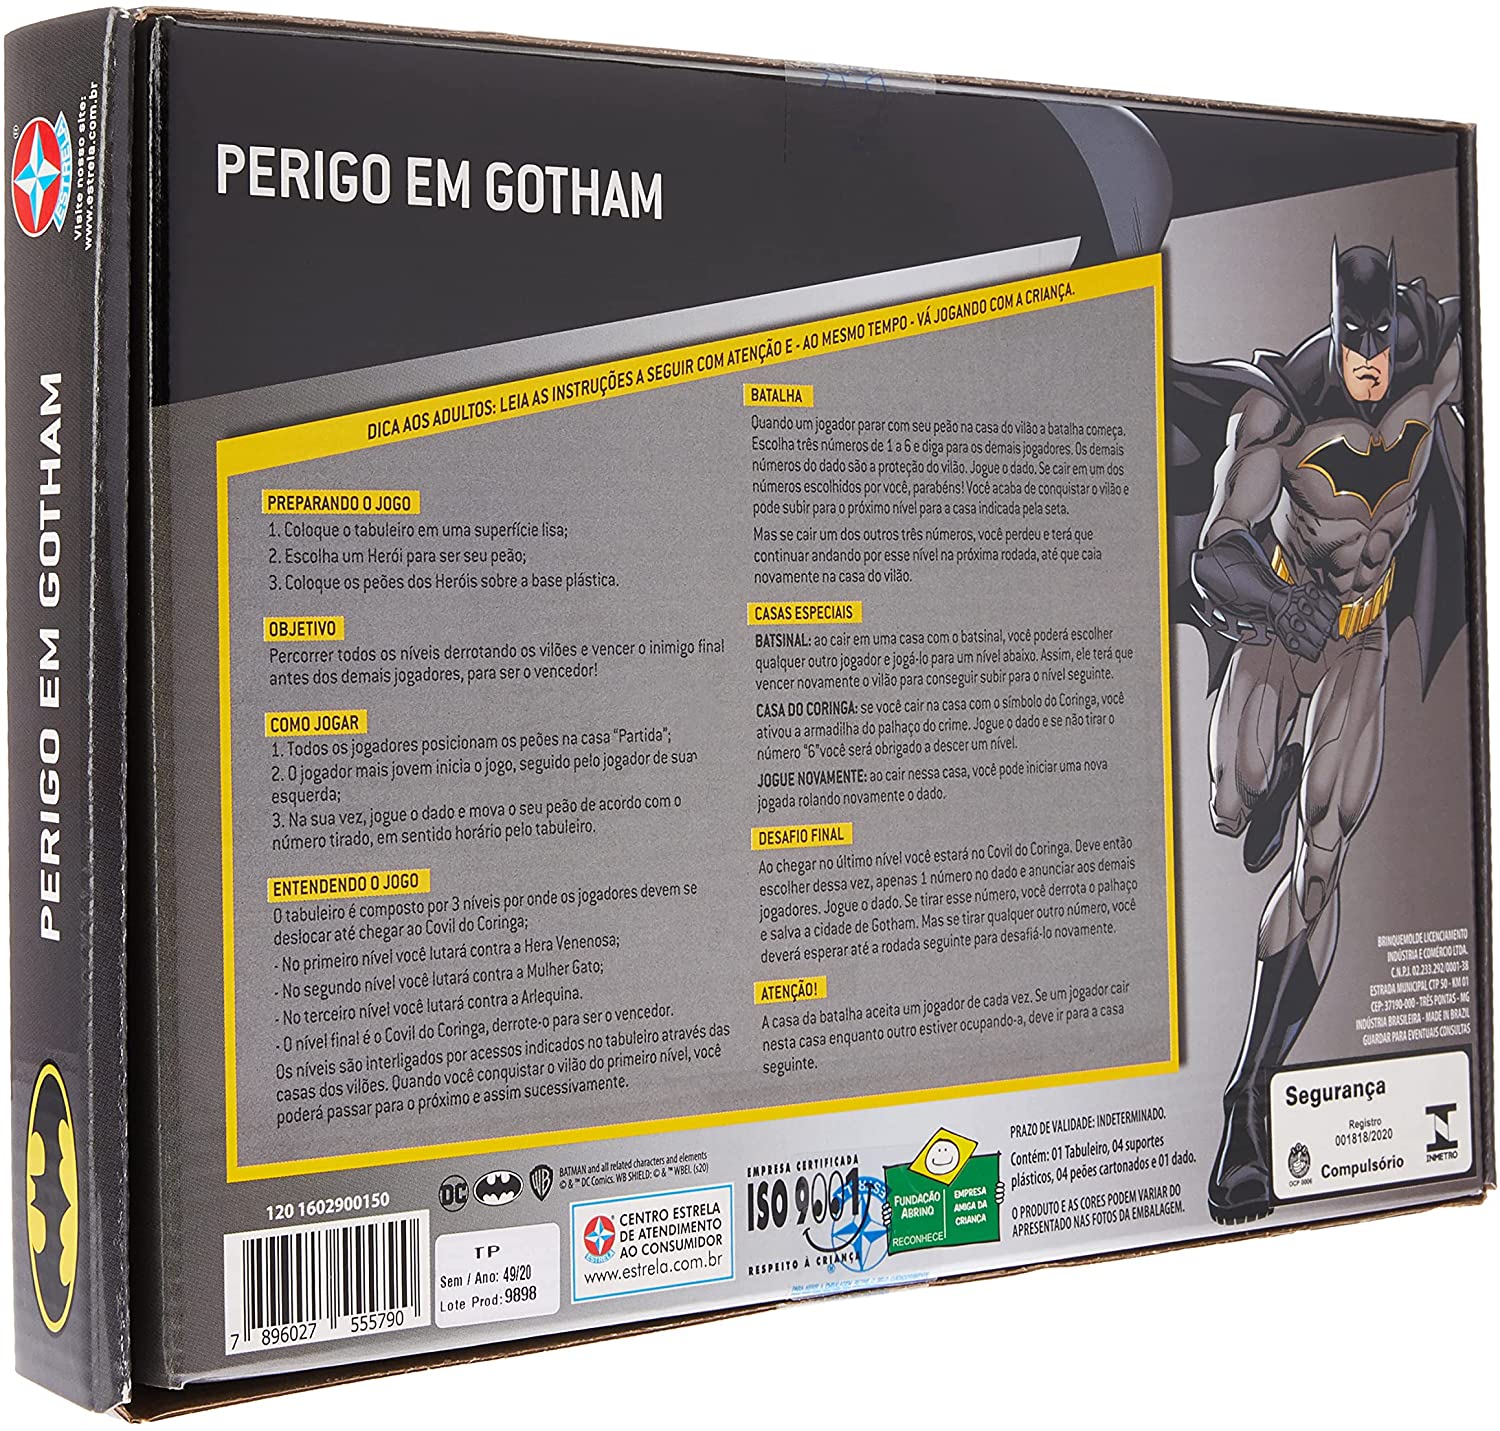 Batman: Arkham City ganha jogo de tabuleiro que traz batalhas contra vilões